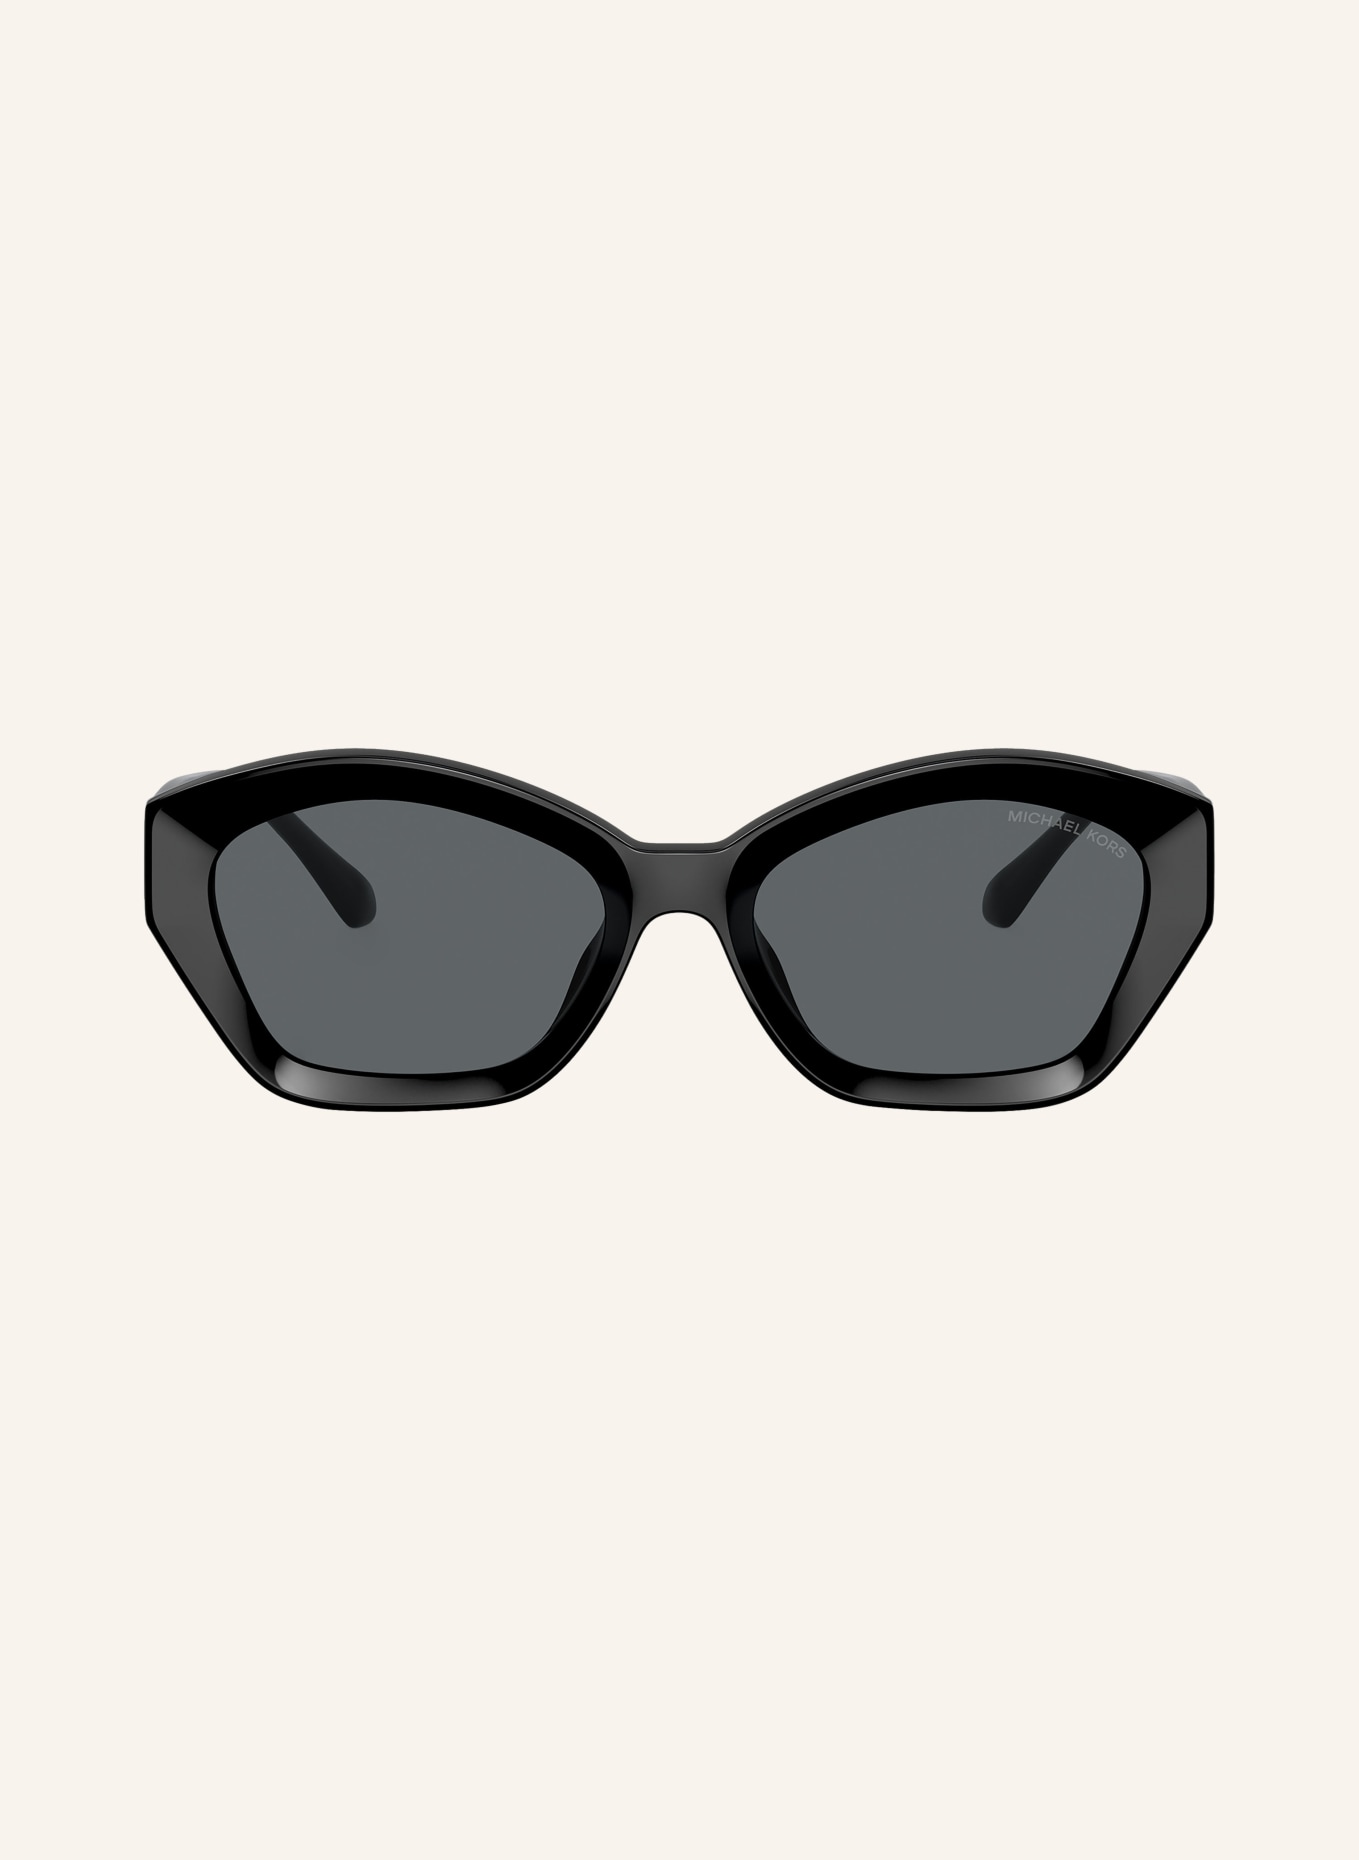 MICHAEL KORS Sunglasses MK2209U BEL AIR, Color: 300587 - BLACK/GRAY (Image 2)